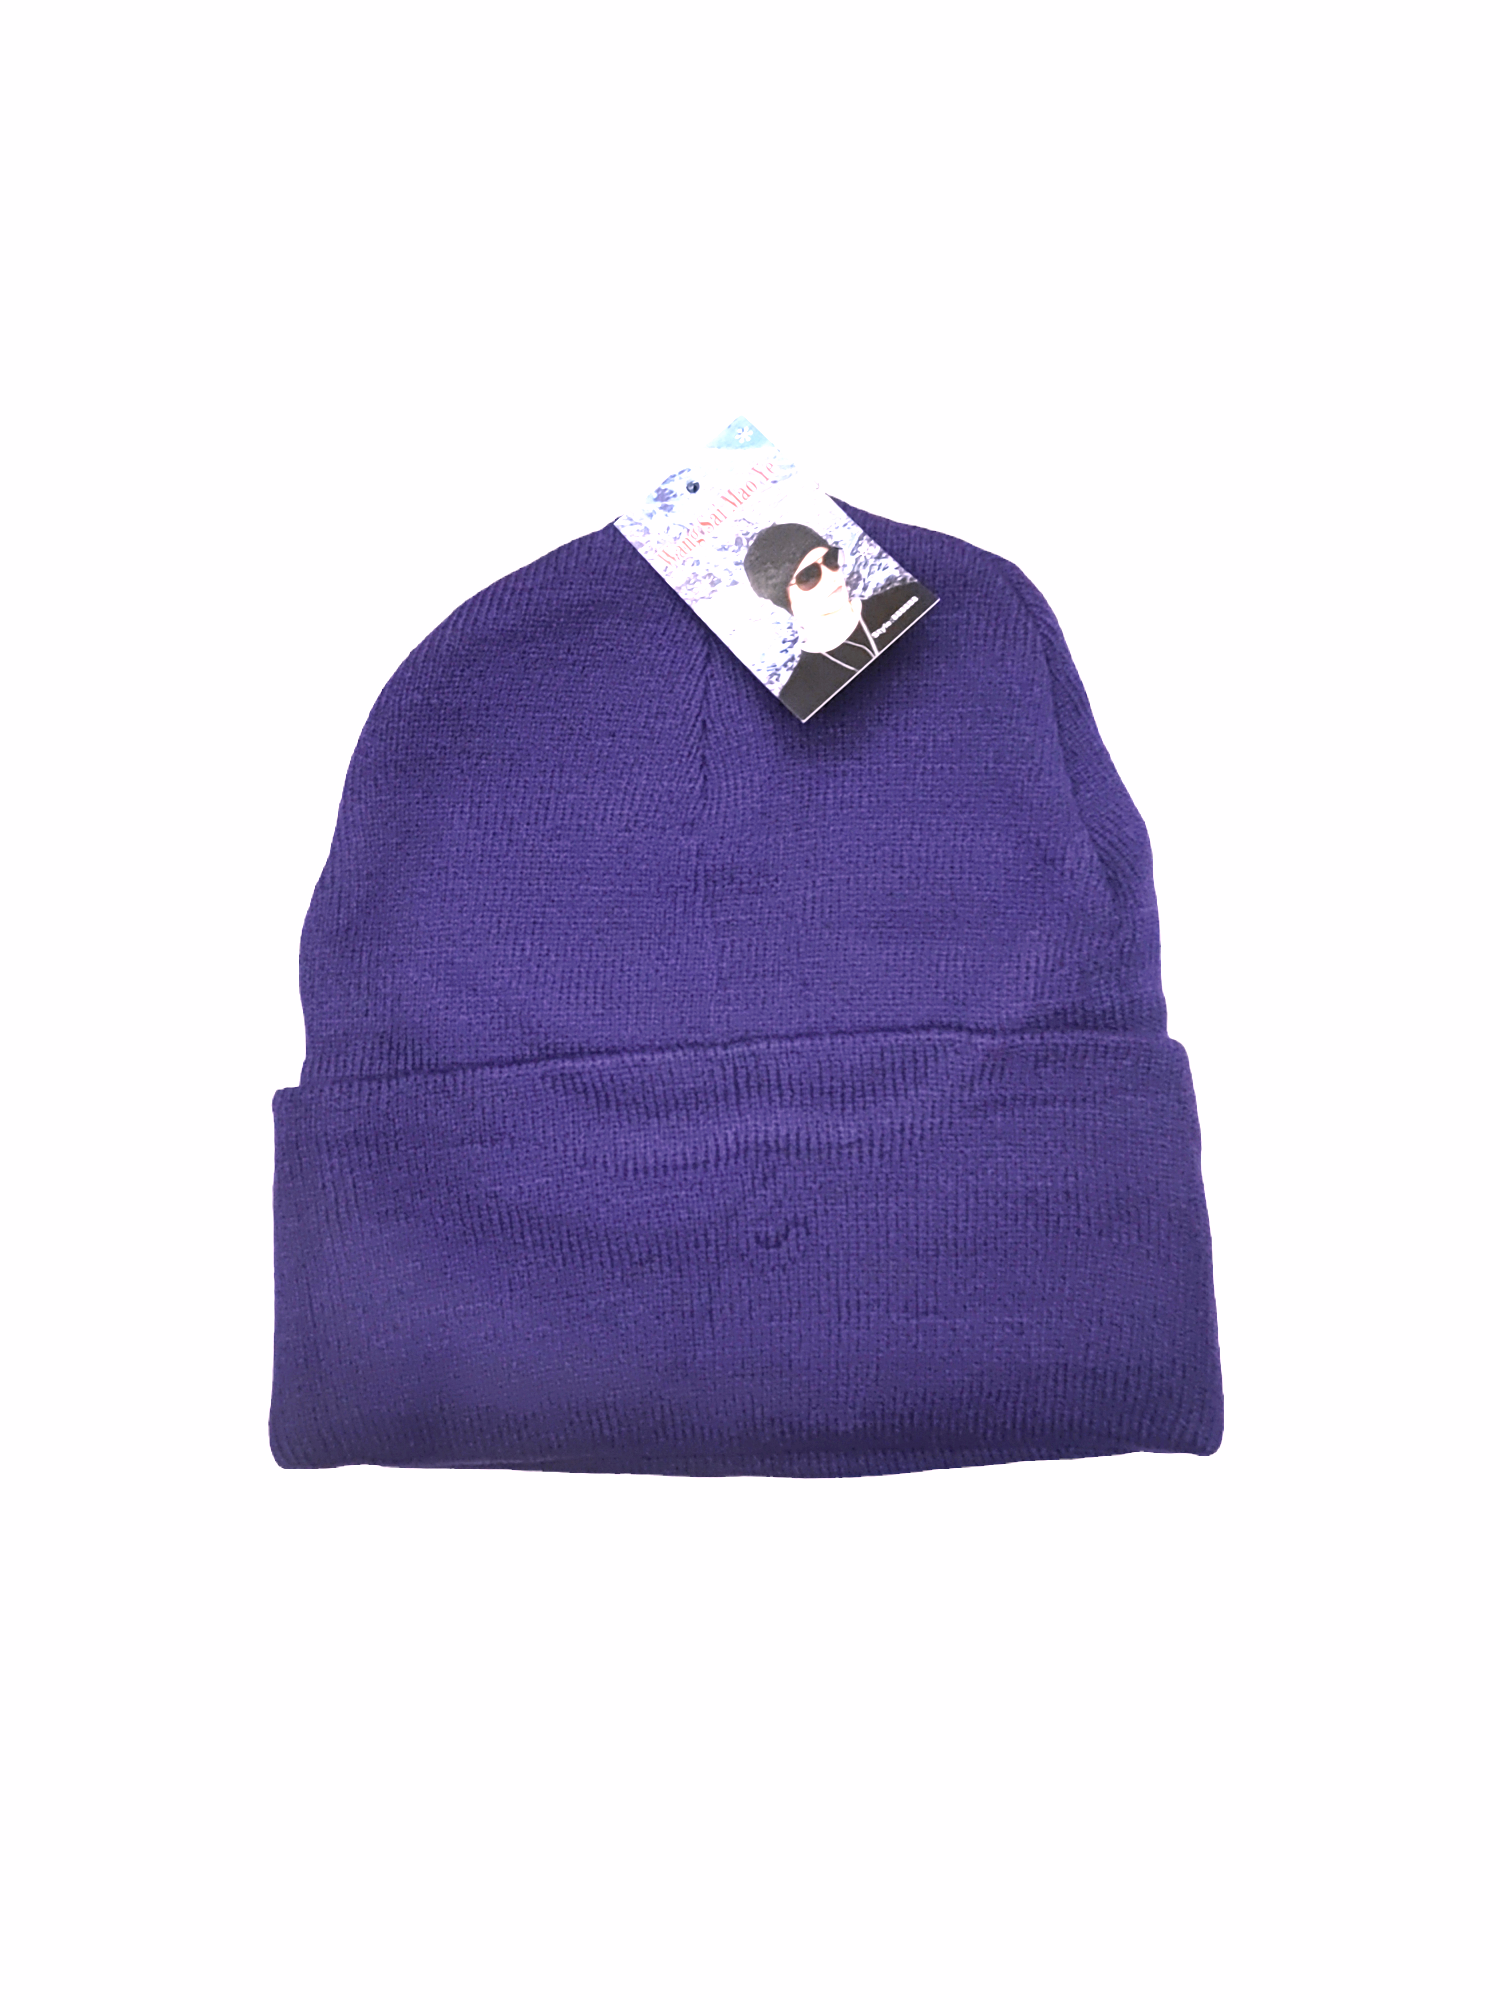 Bonnet tricot simple    (x12) #3-1